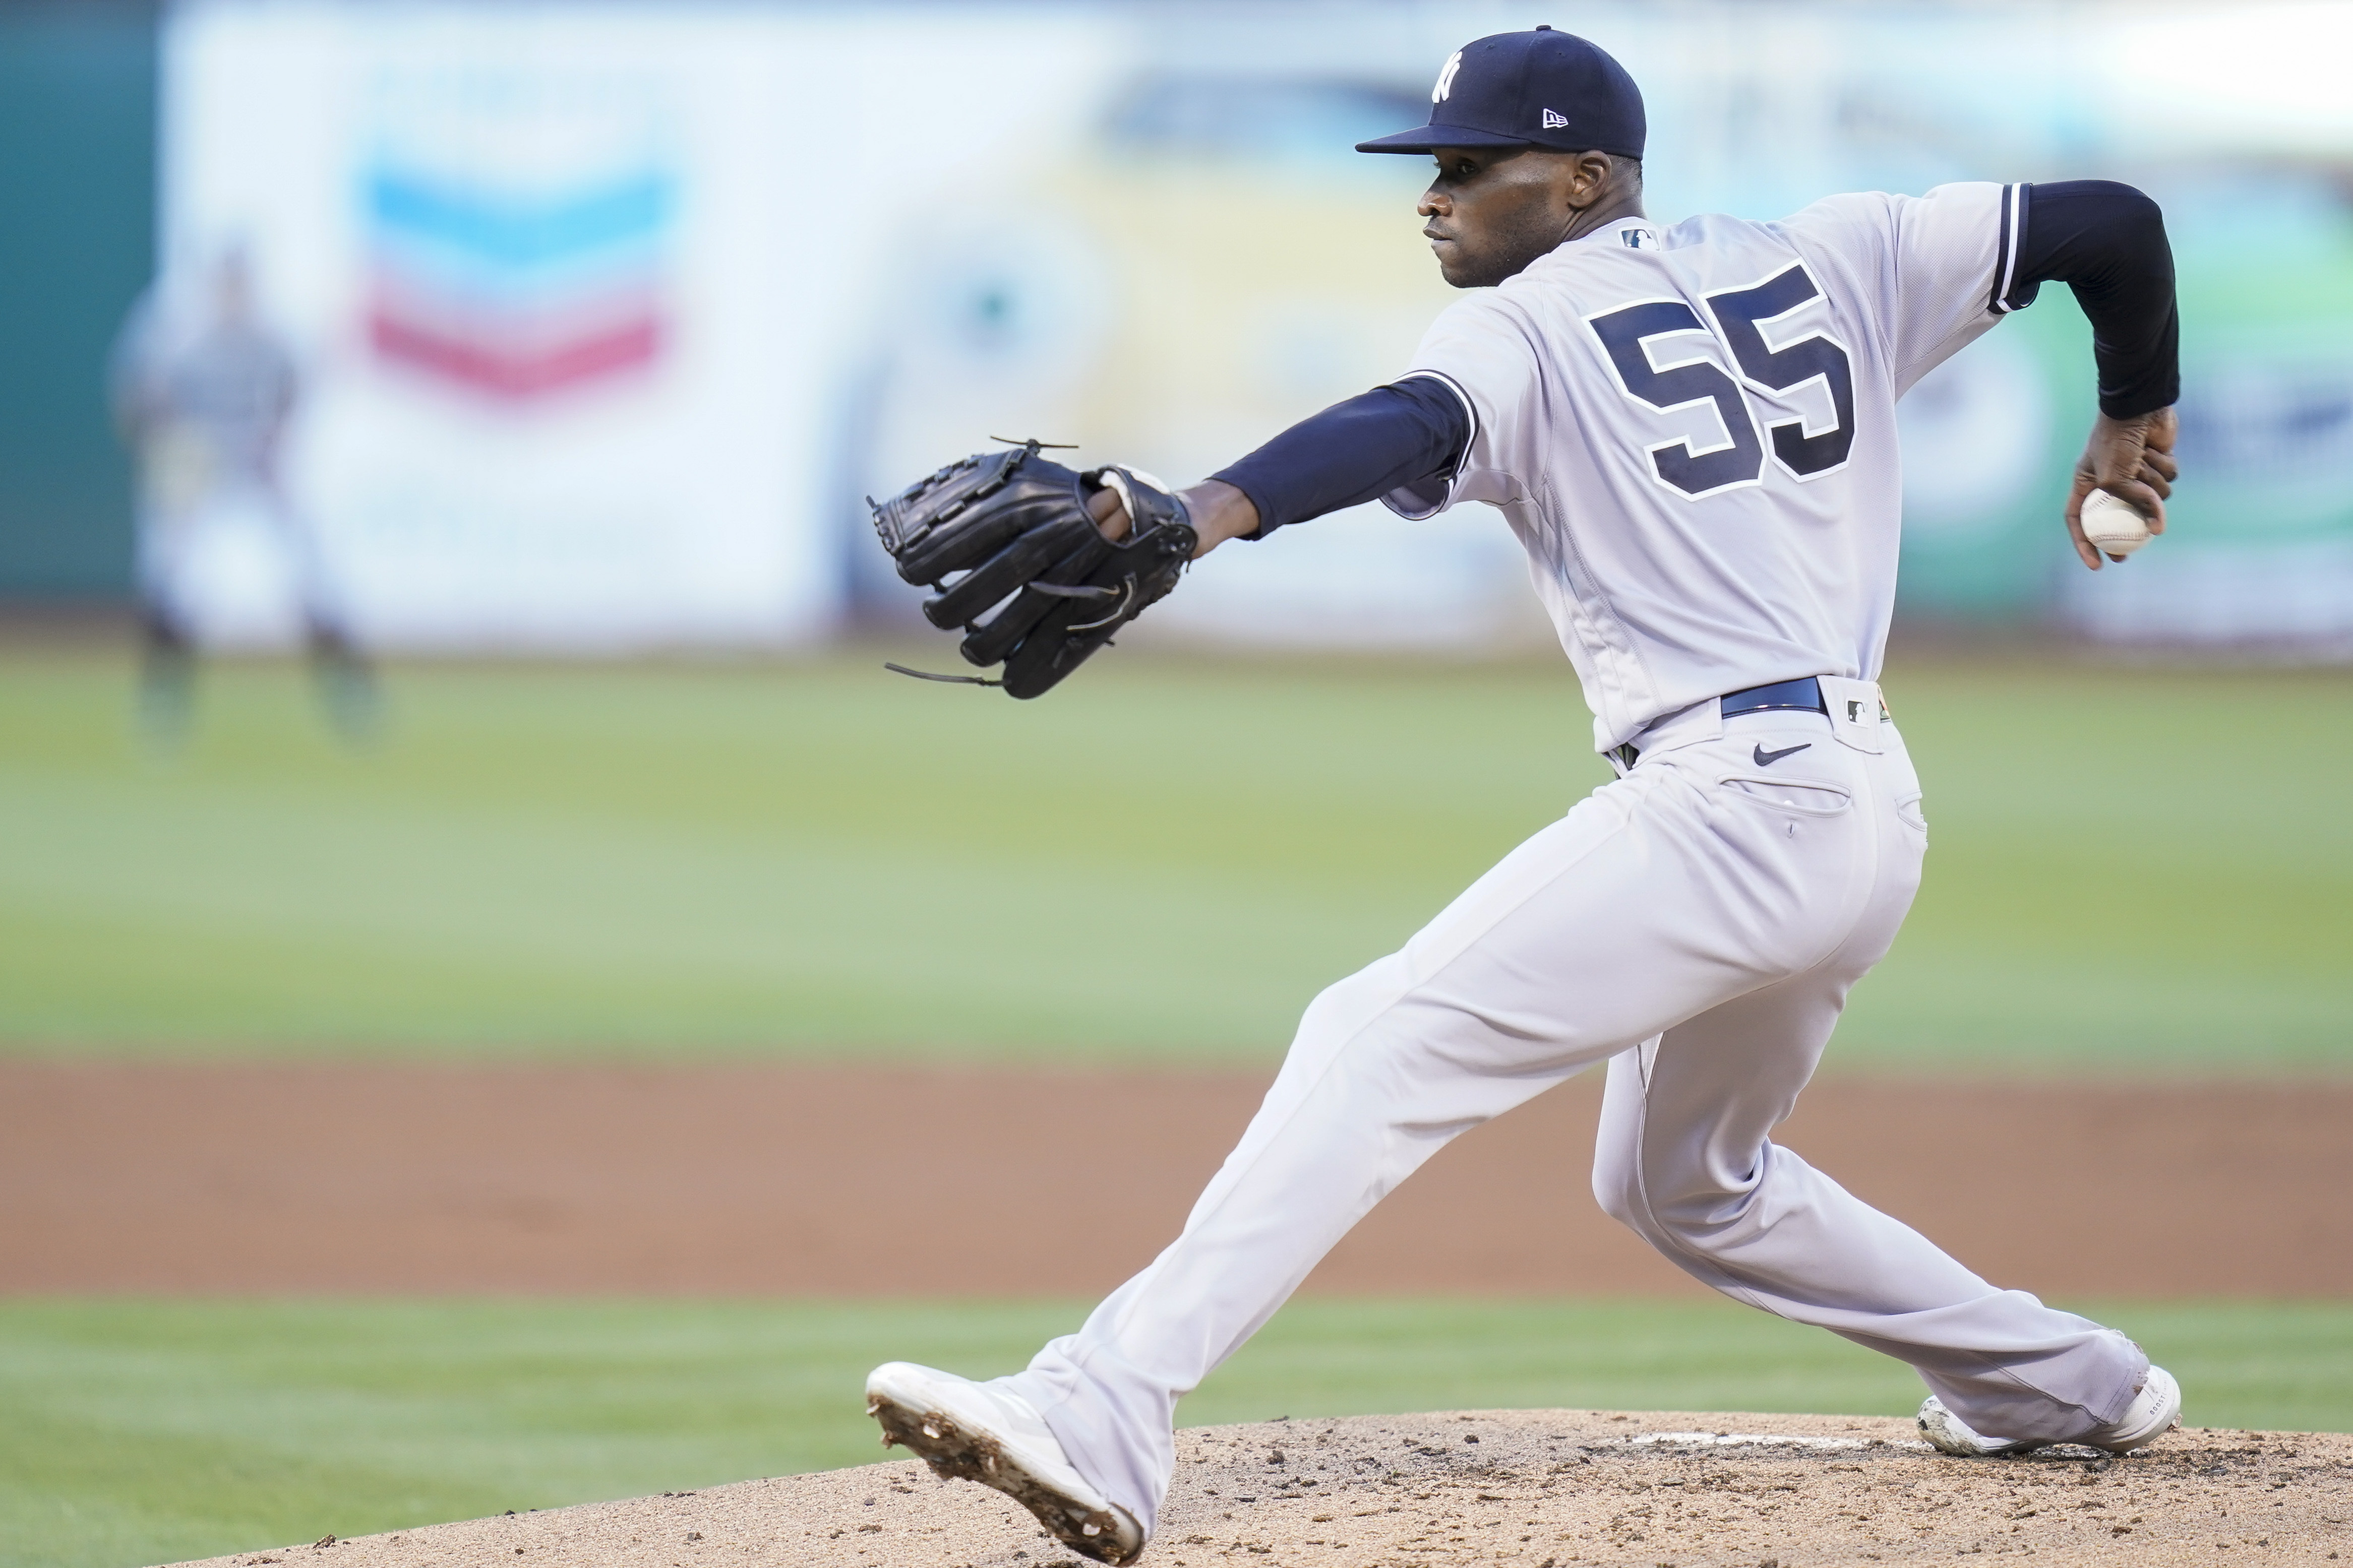 MLB's hiatus will impact New York Yankees SP Domingo German